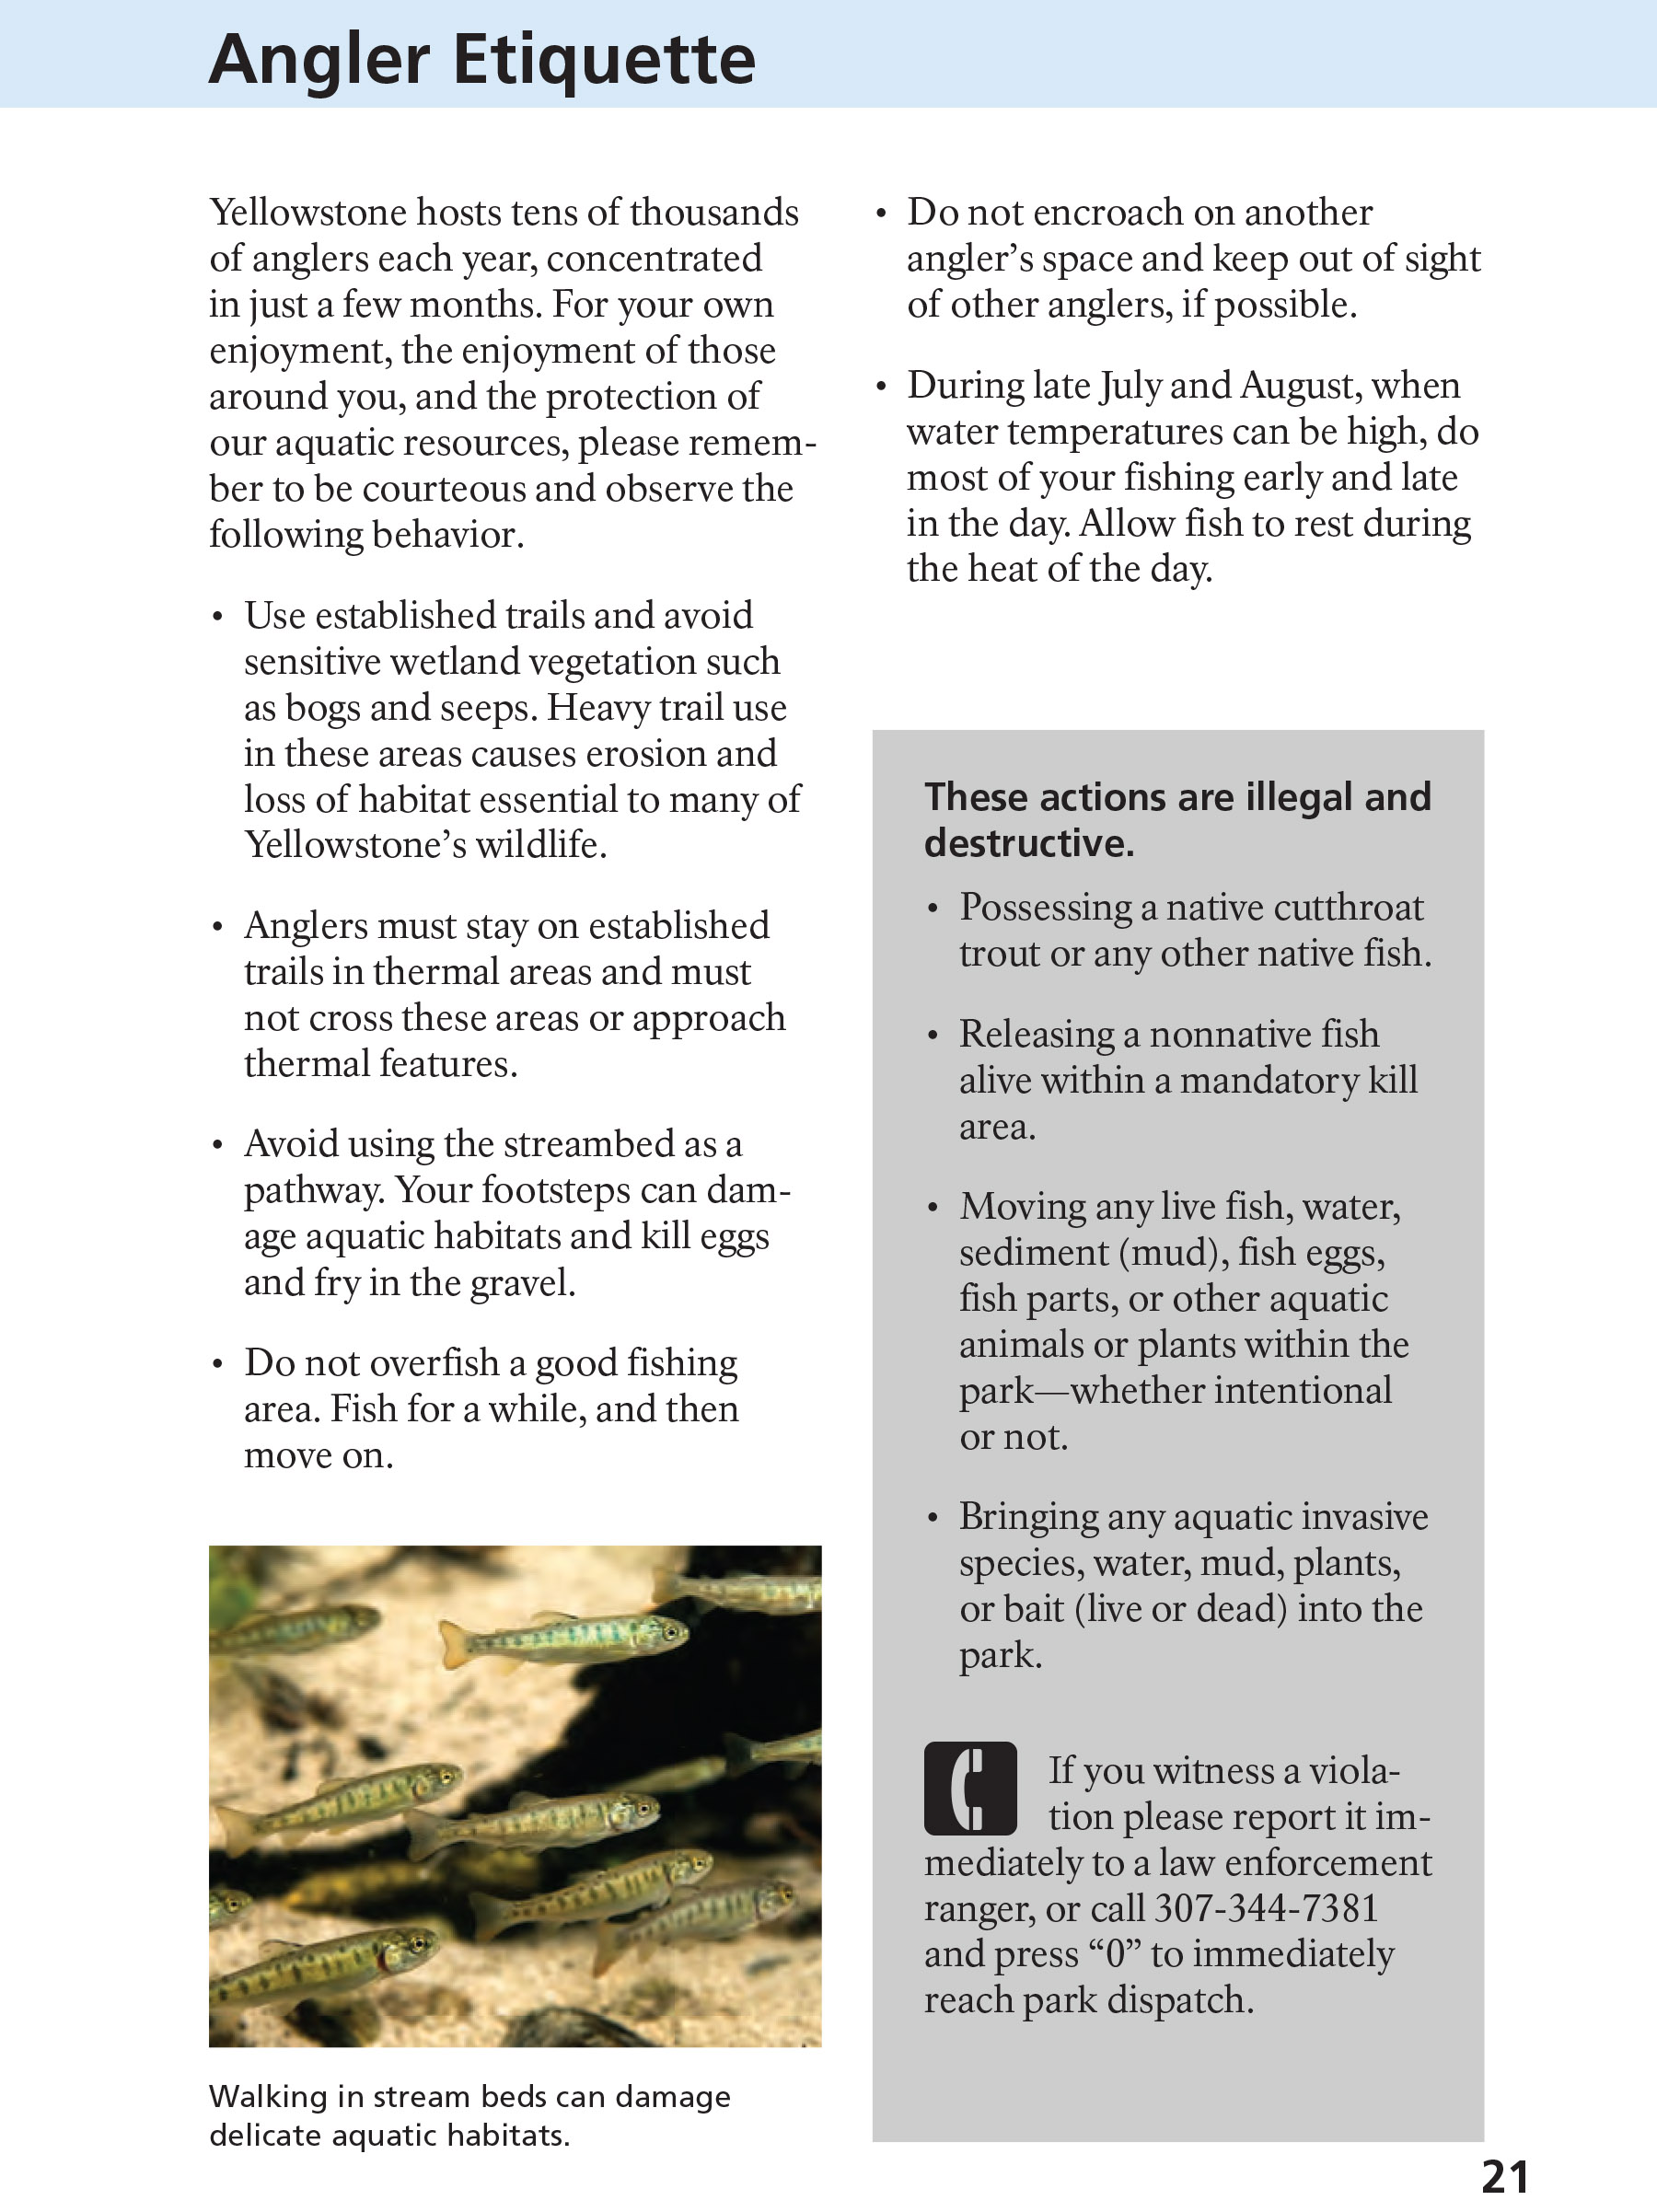 Yellowstone Fishing Regulations Page 21 - NPS Image